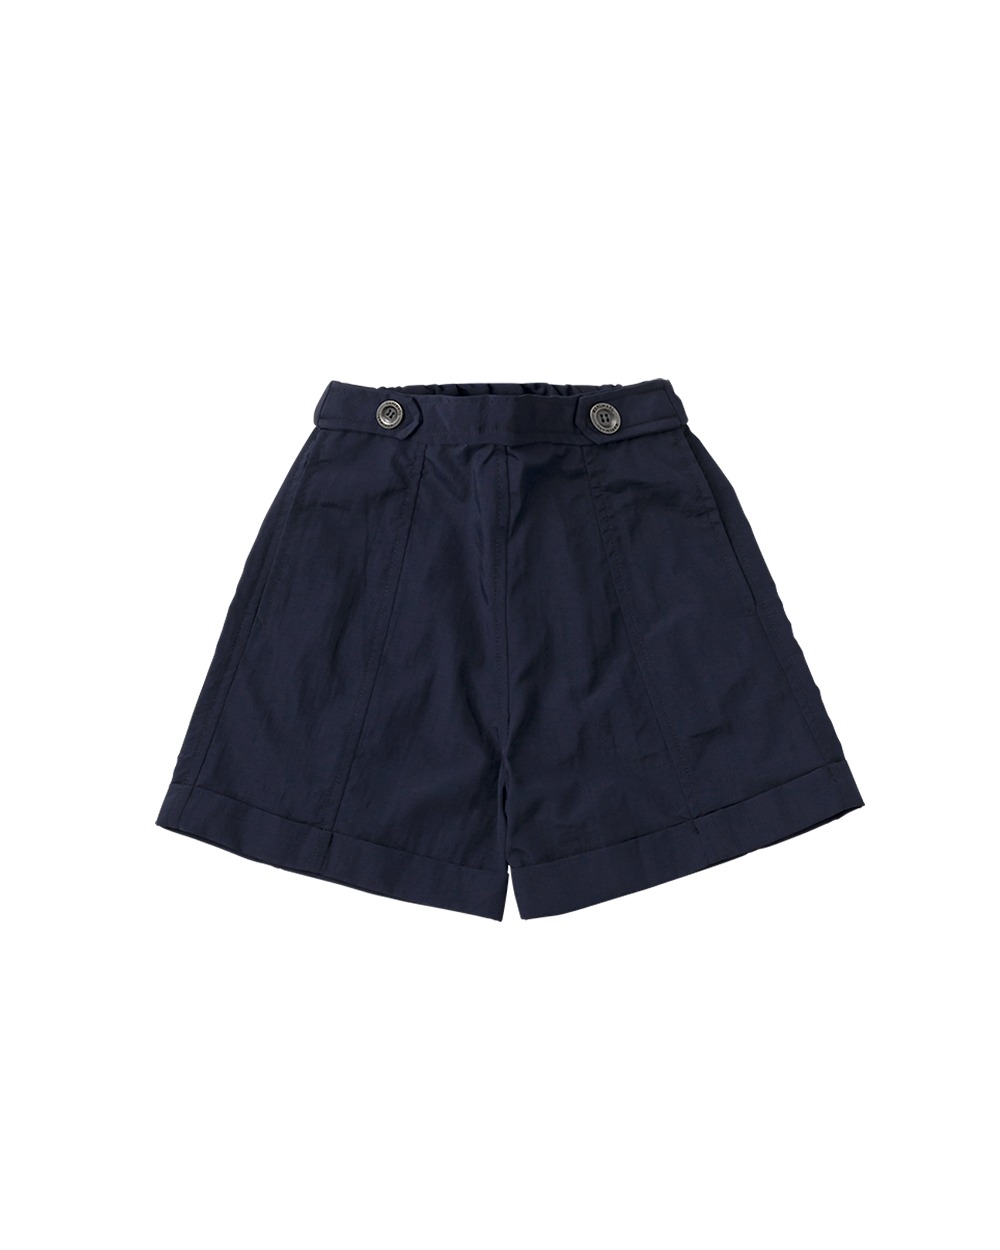 paddle shorts 2 navy - 마르마르